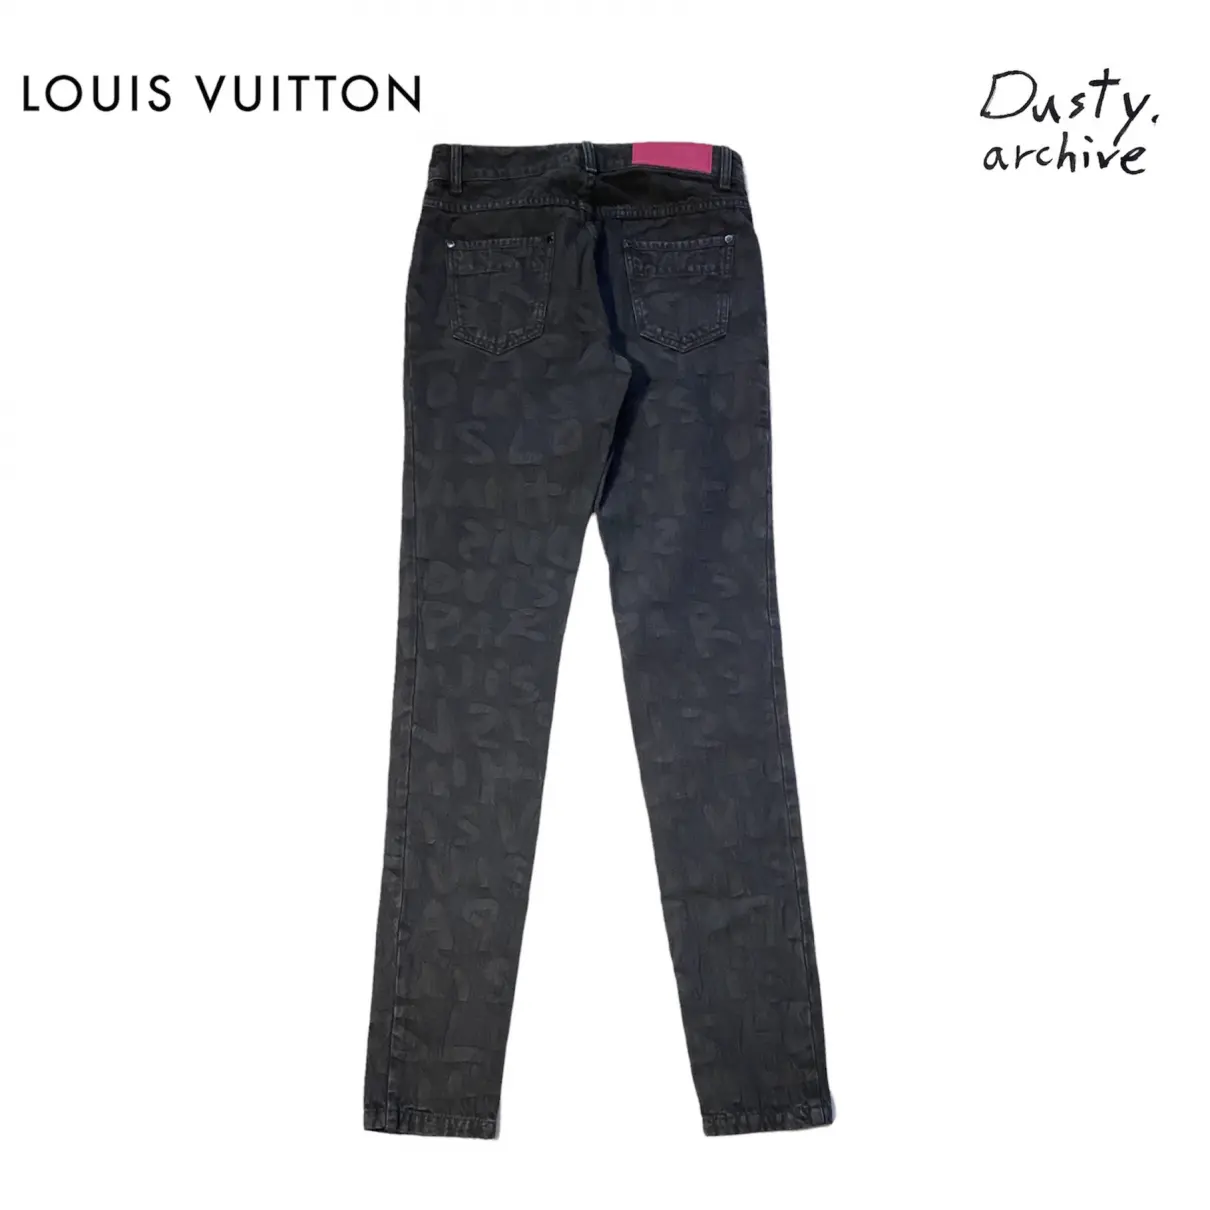 Straight jeans Louis Vuitton - Vintage